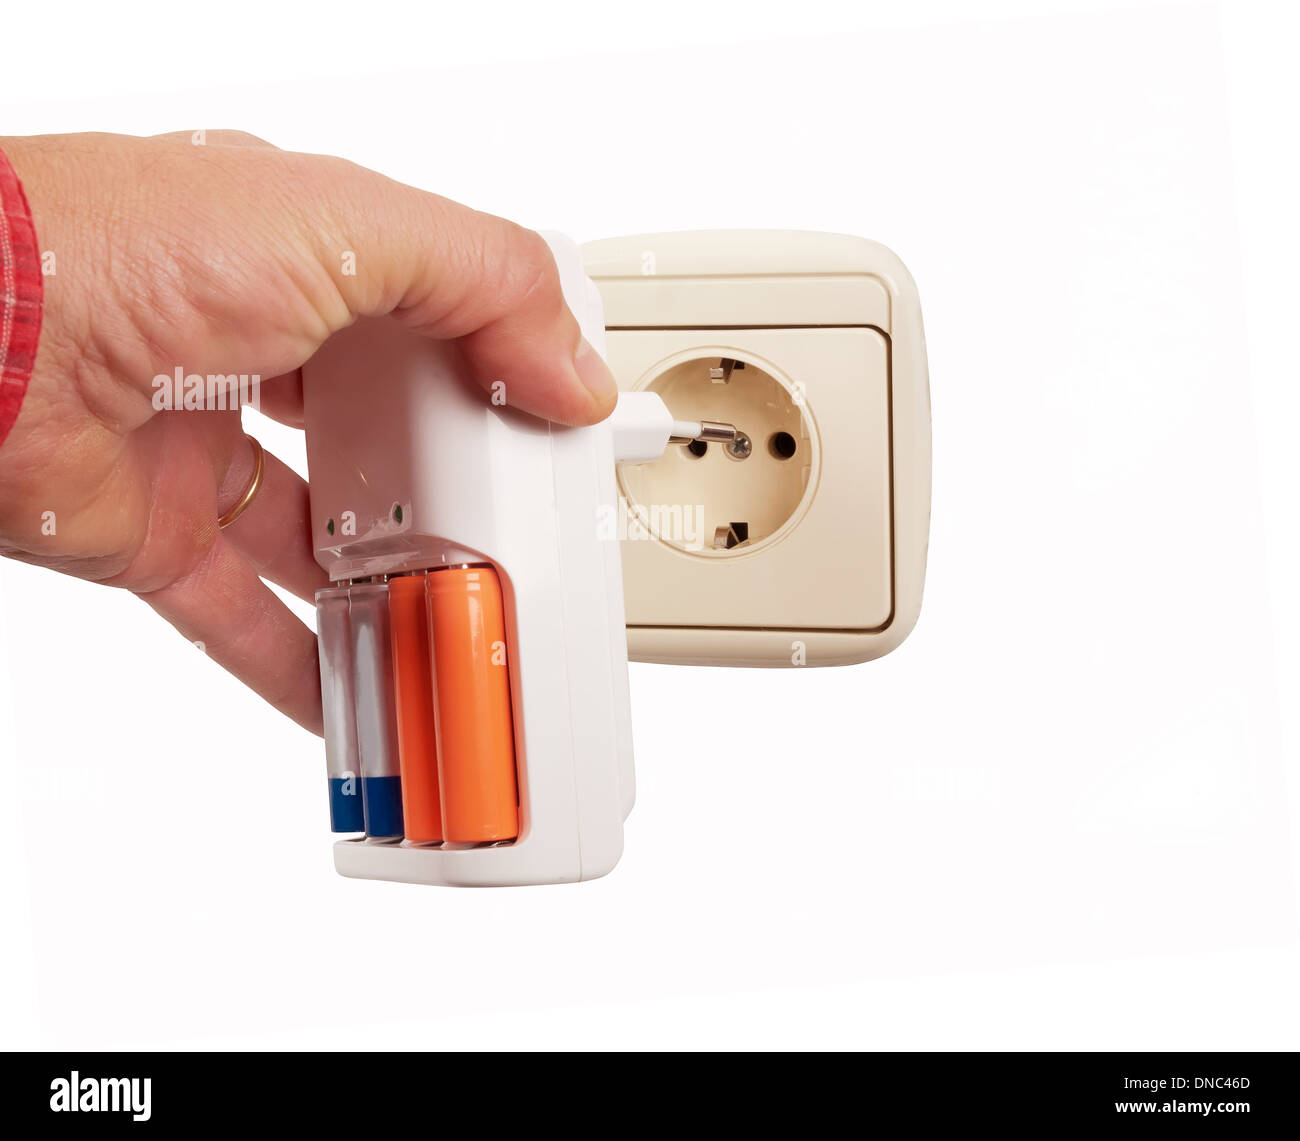 Conecte el cargador de batería de mano a un socket Foto de stock